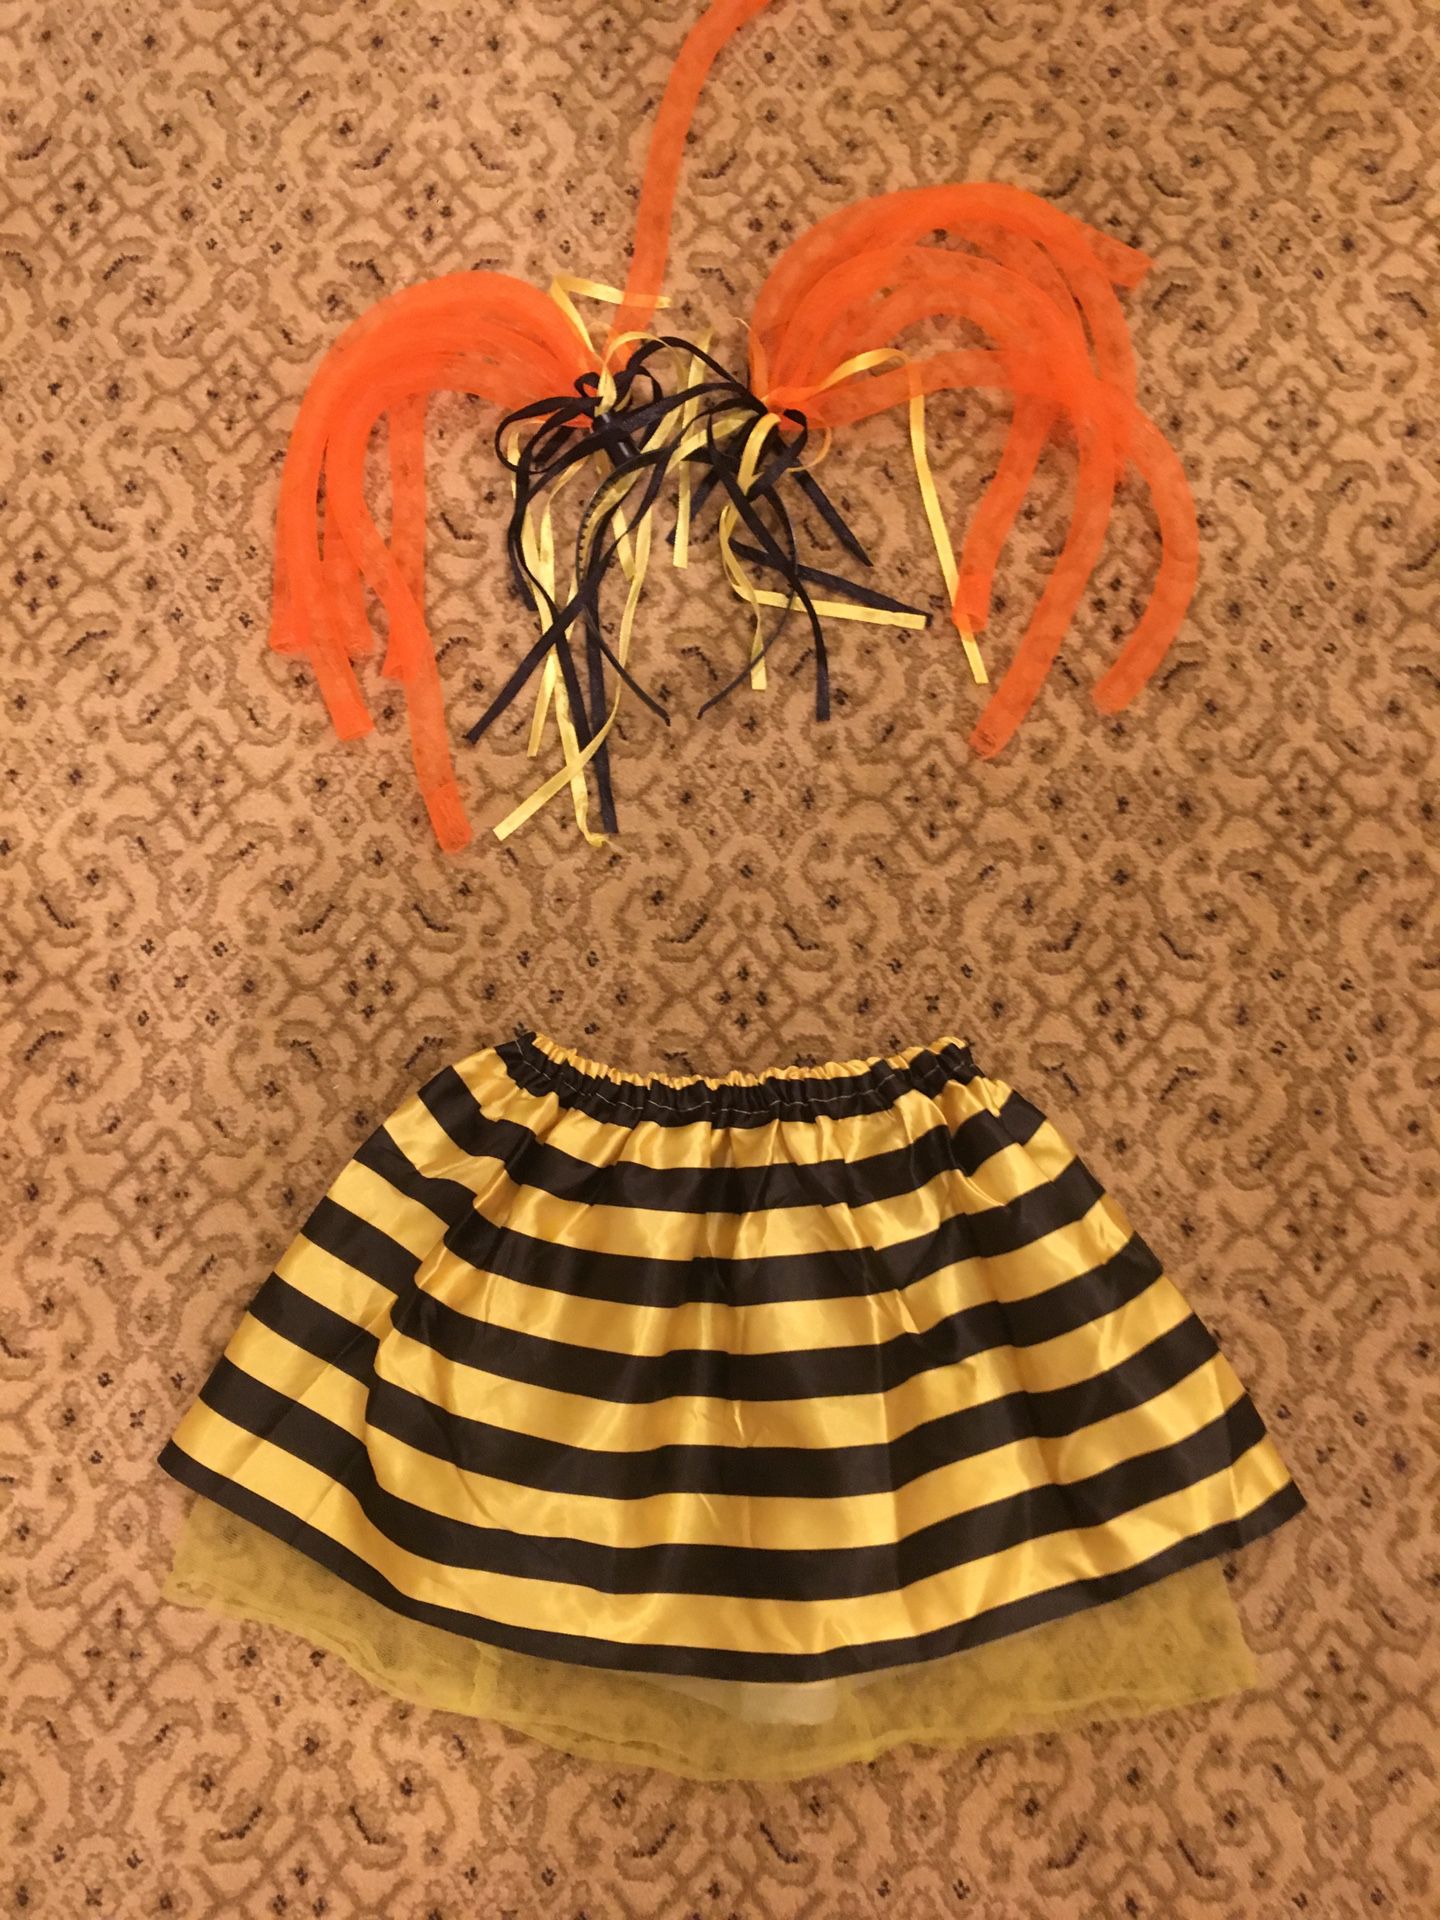 Bee accessories for Halloween